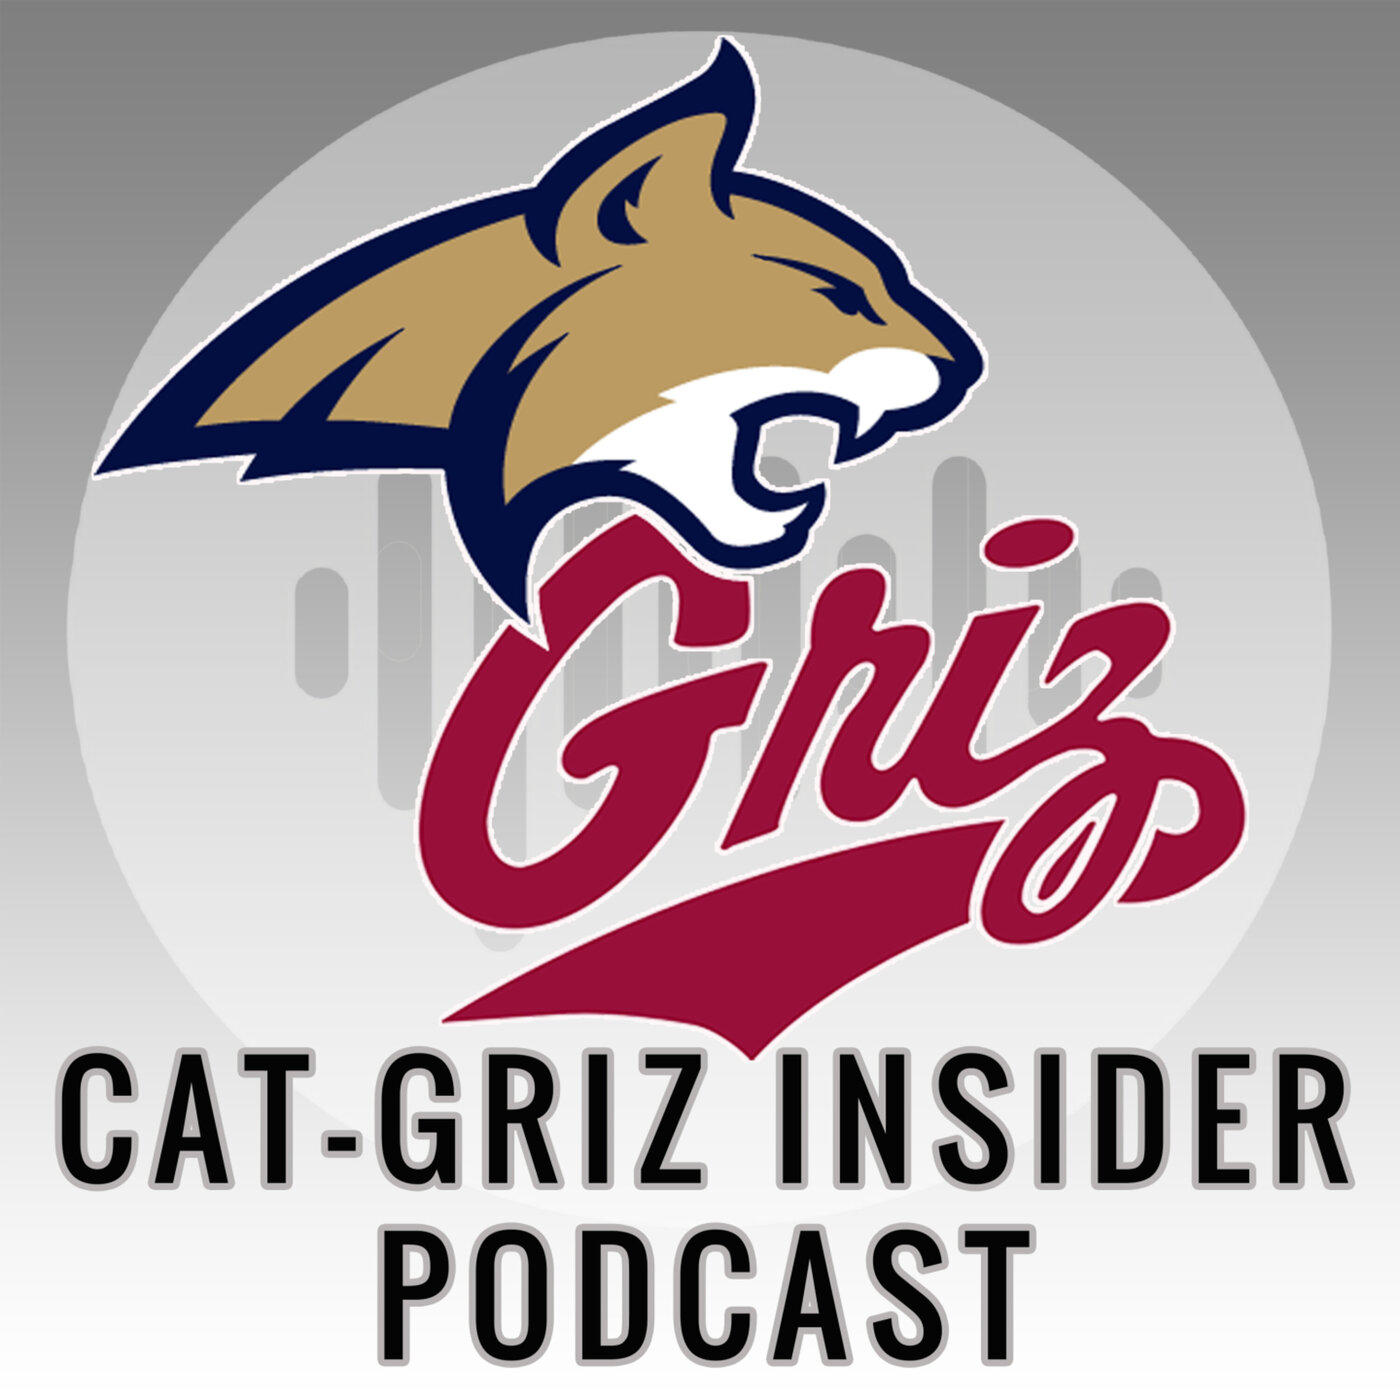 Cat-Griz Insider Podcast: Episode 5